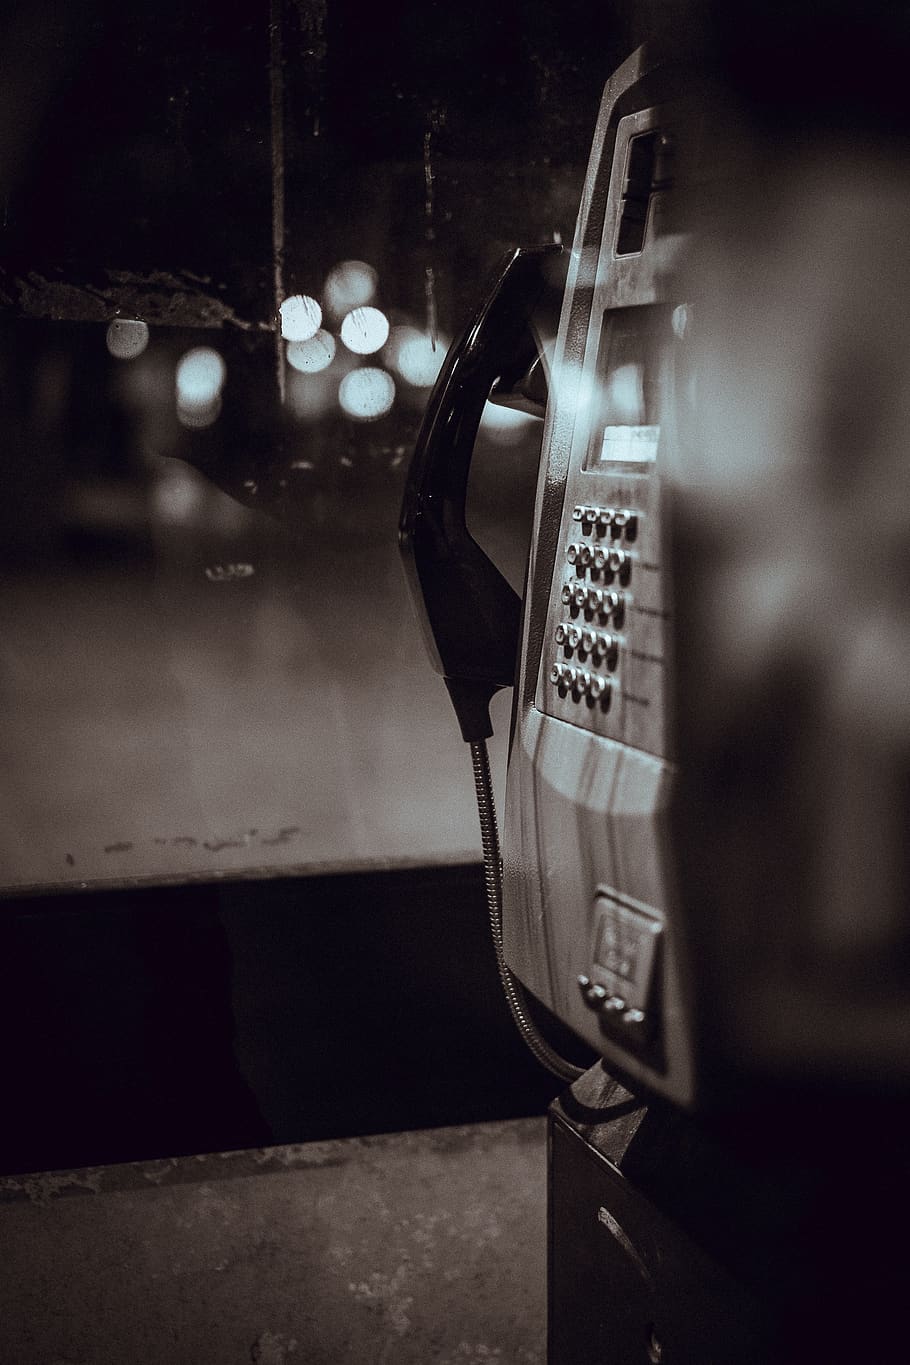 telepon umum, komunikasi, panggilan, telepon, hitam dan putih, bokeh, merapatkan, teknologi, tidak ada orang, bergaya retro